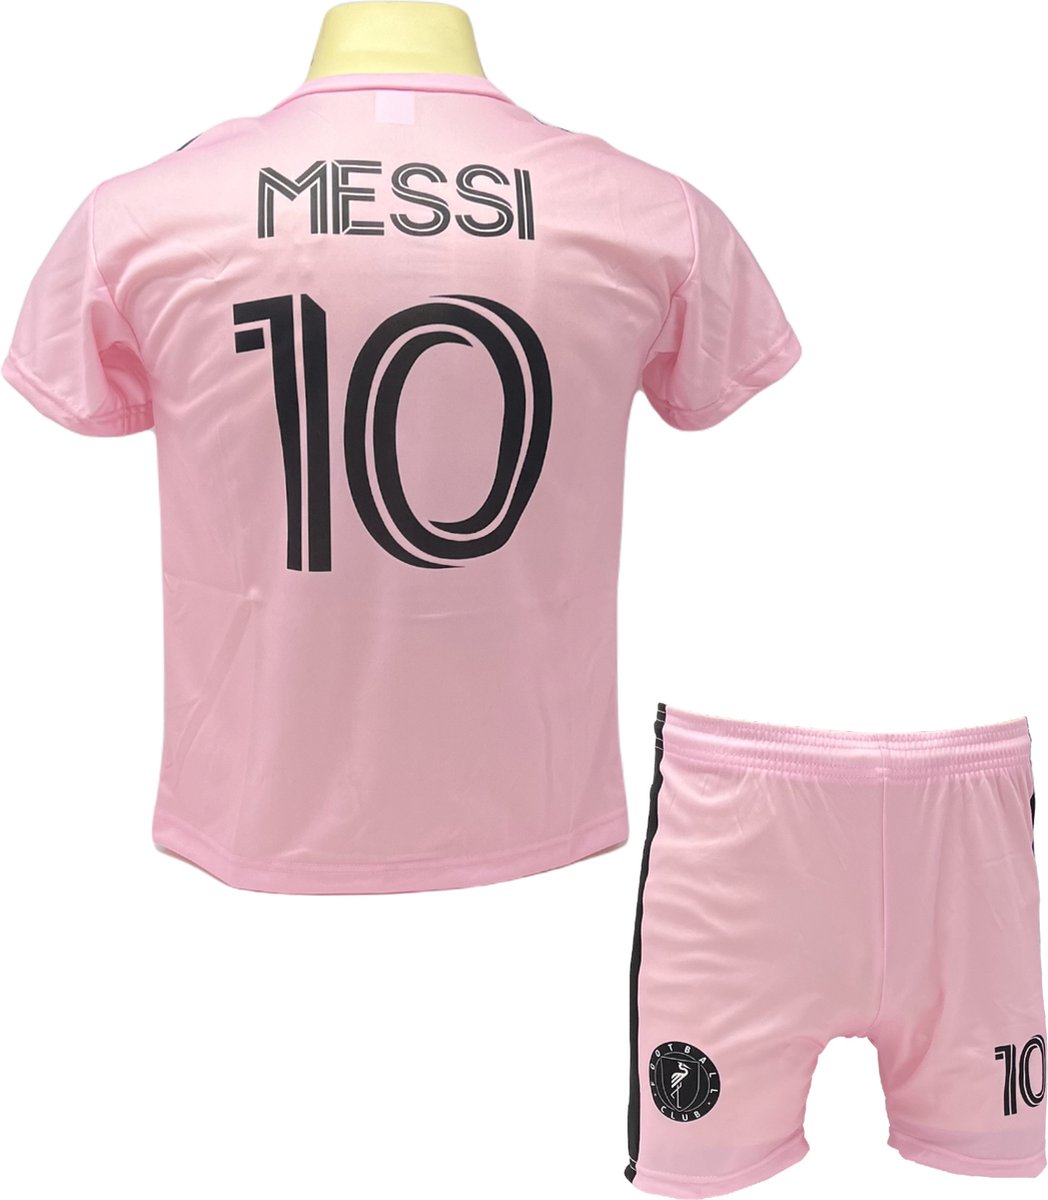 Messi Miami Voetbalshirt en Broekje Voetbaltenue Roze Thuis - Maat XL